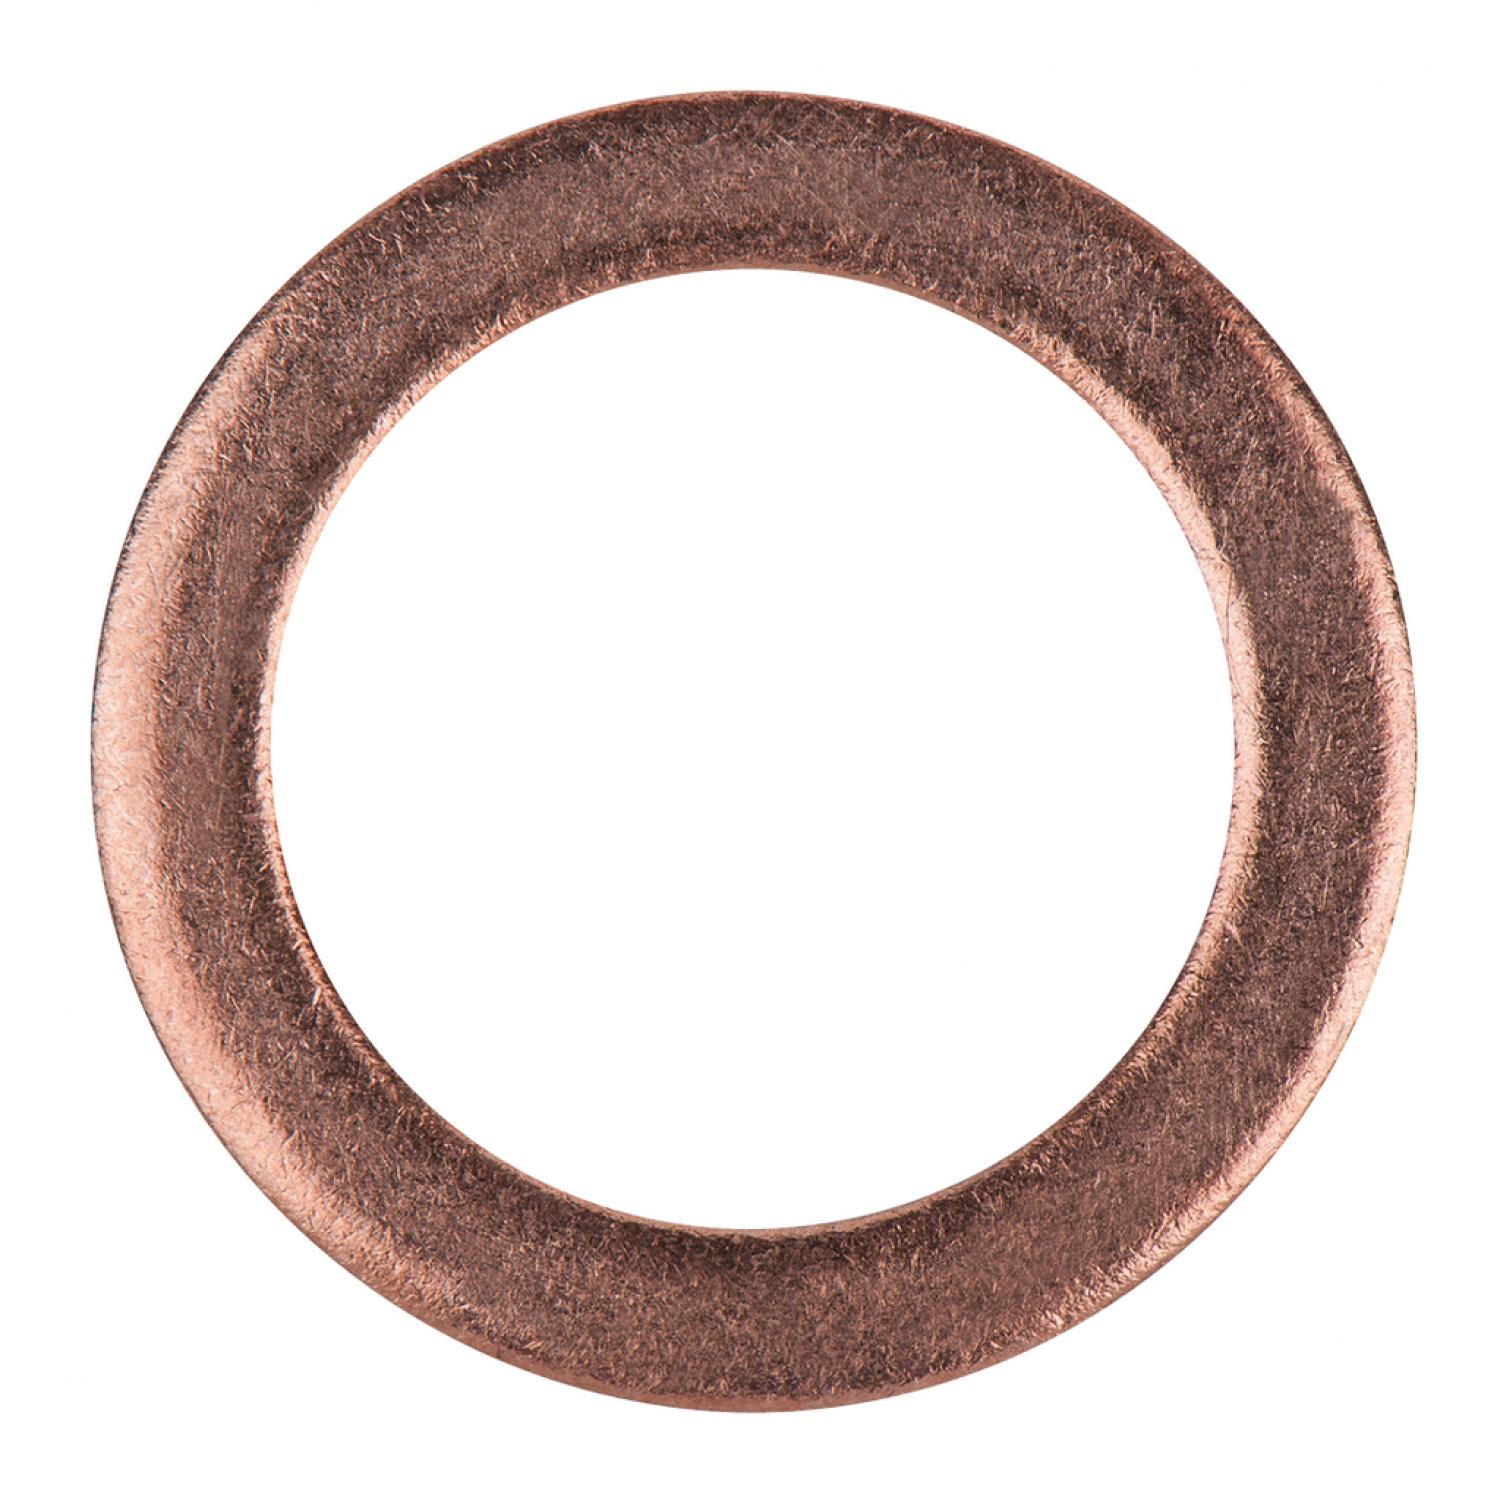 Уплотнительное кольцо, медное, внешний Ø 20 мм, внутренний Ø 14 мм, 10 шт в упаковке